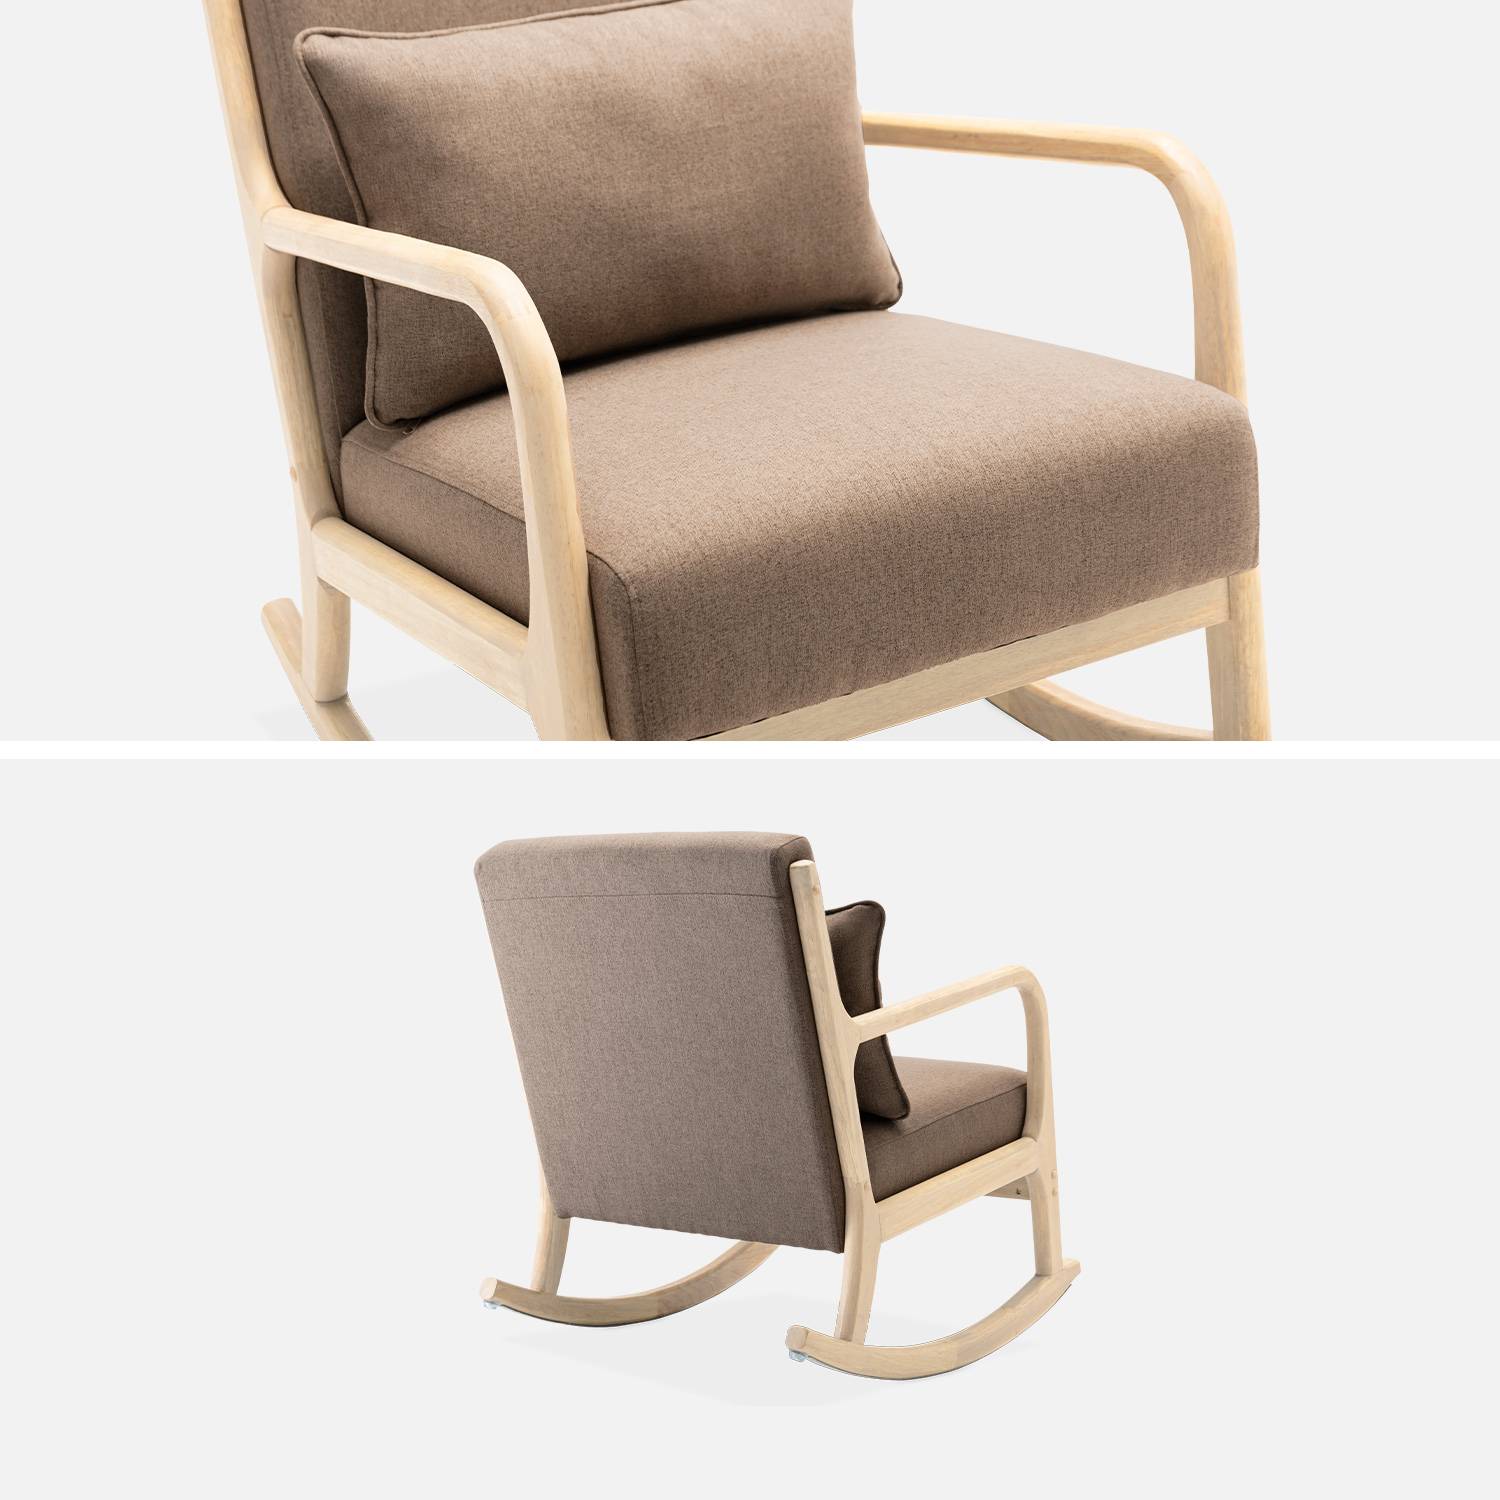 Design schommelstoel van hout en stof, 1 plaats, Scandinavische look, bruin Photo3